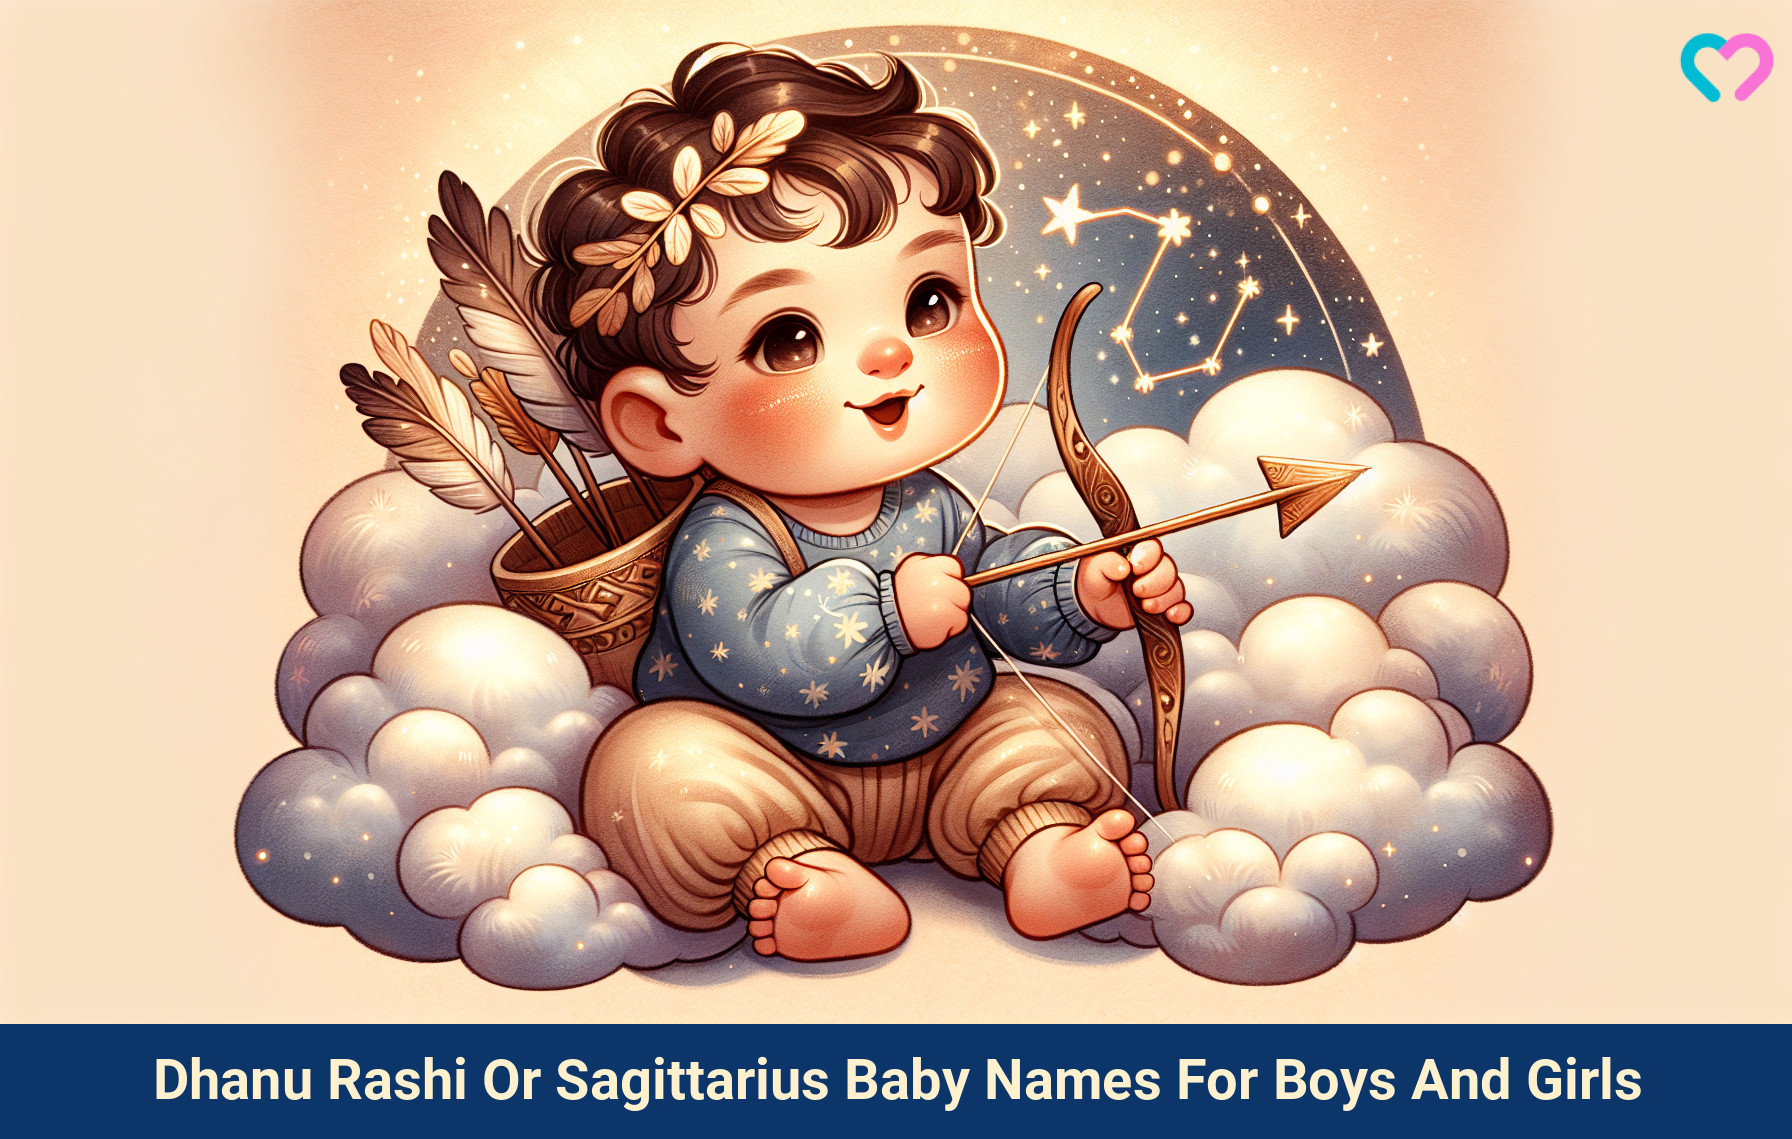 Dhanu Rashi names for boys and girls_illustration